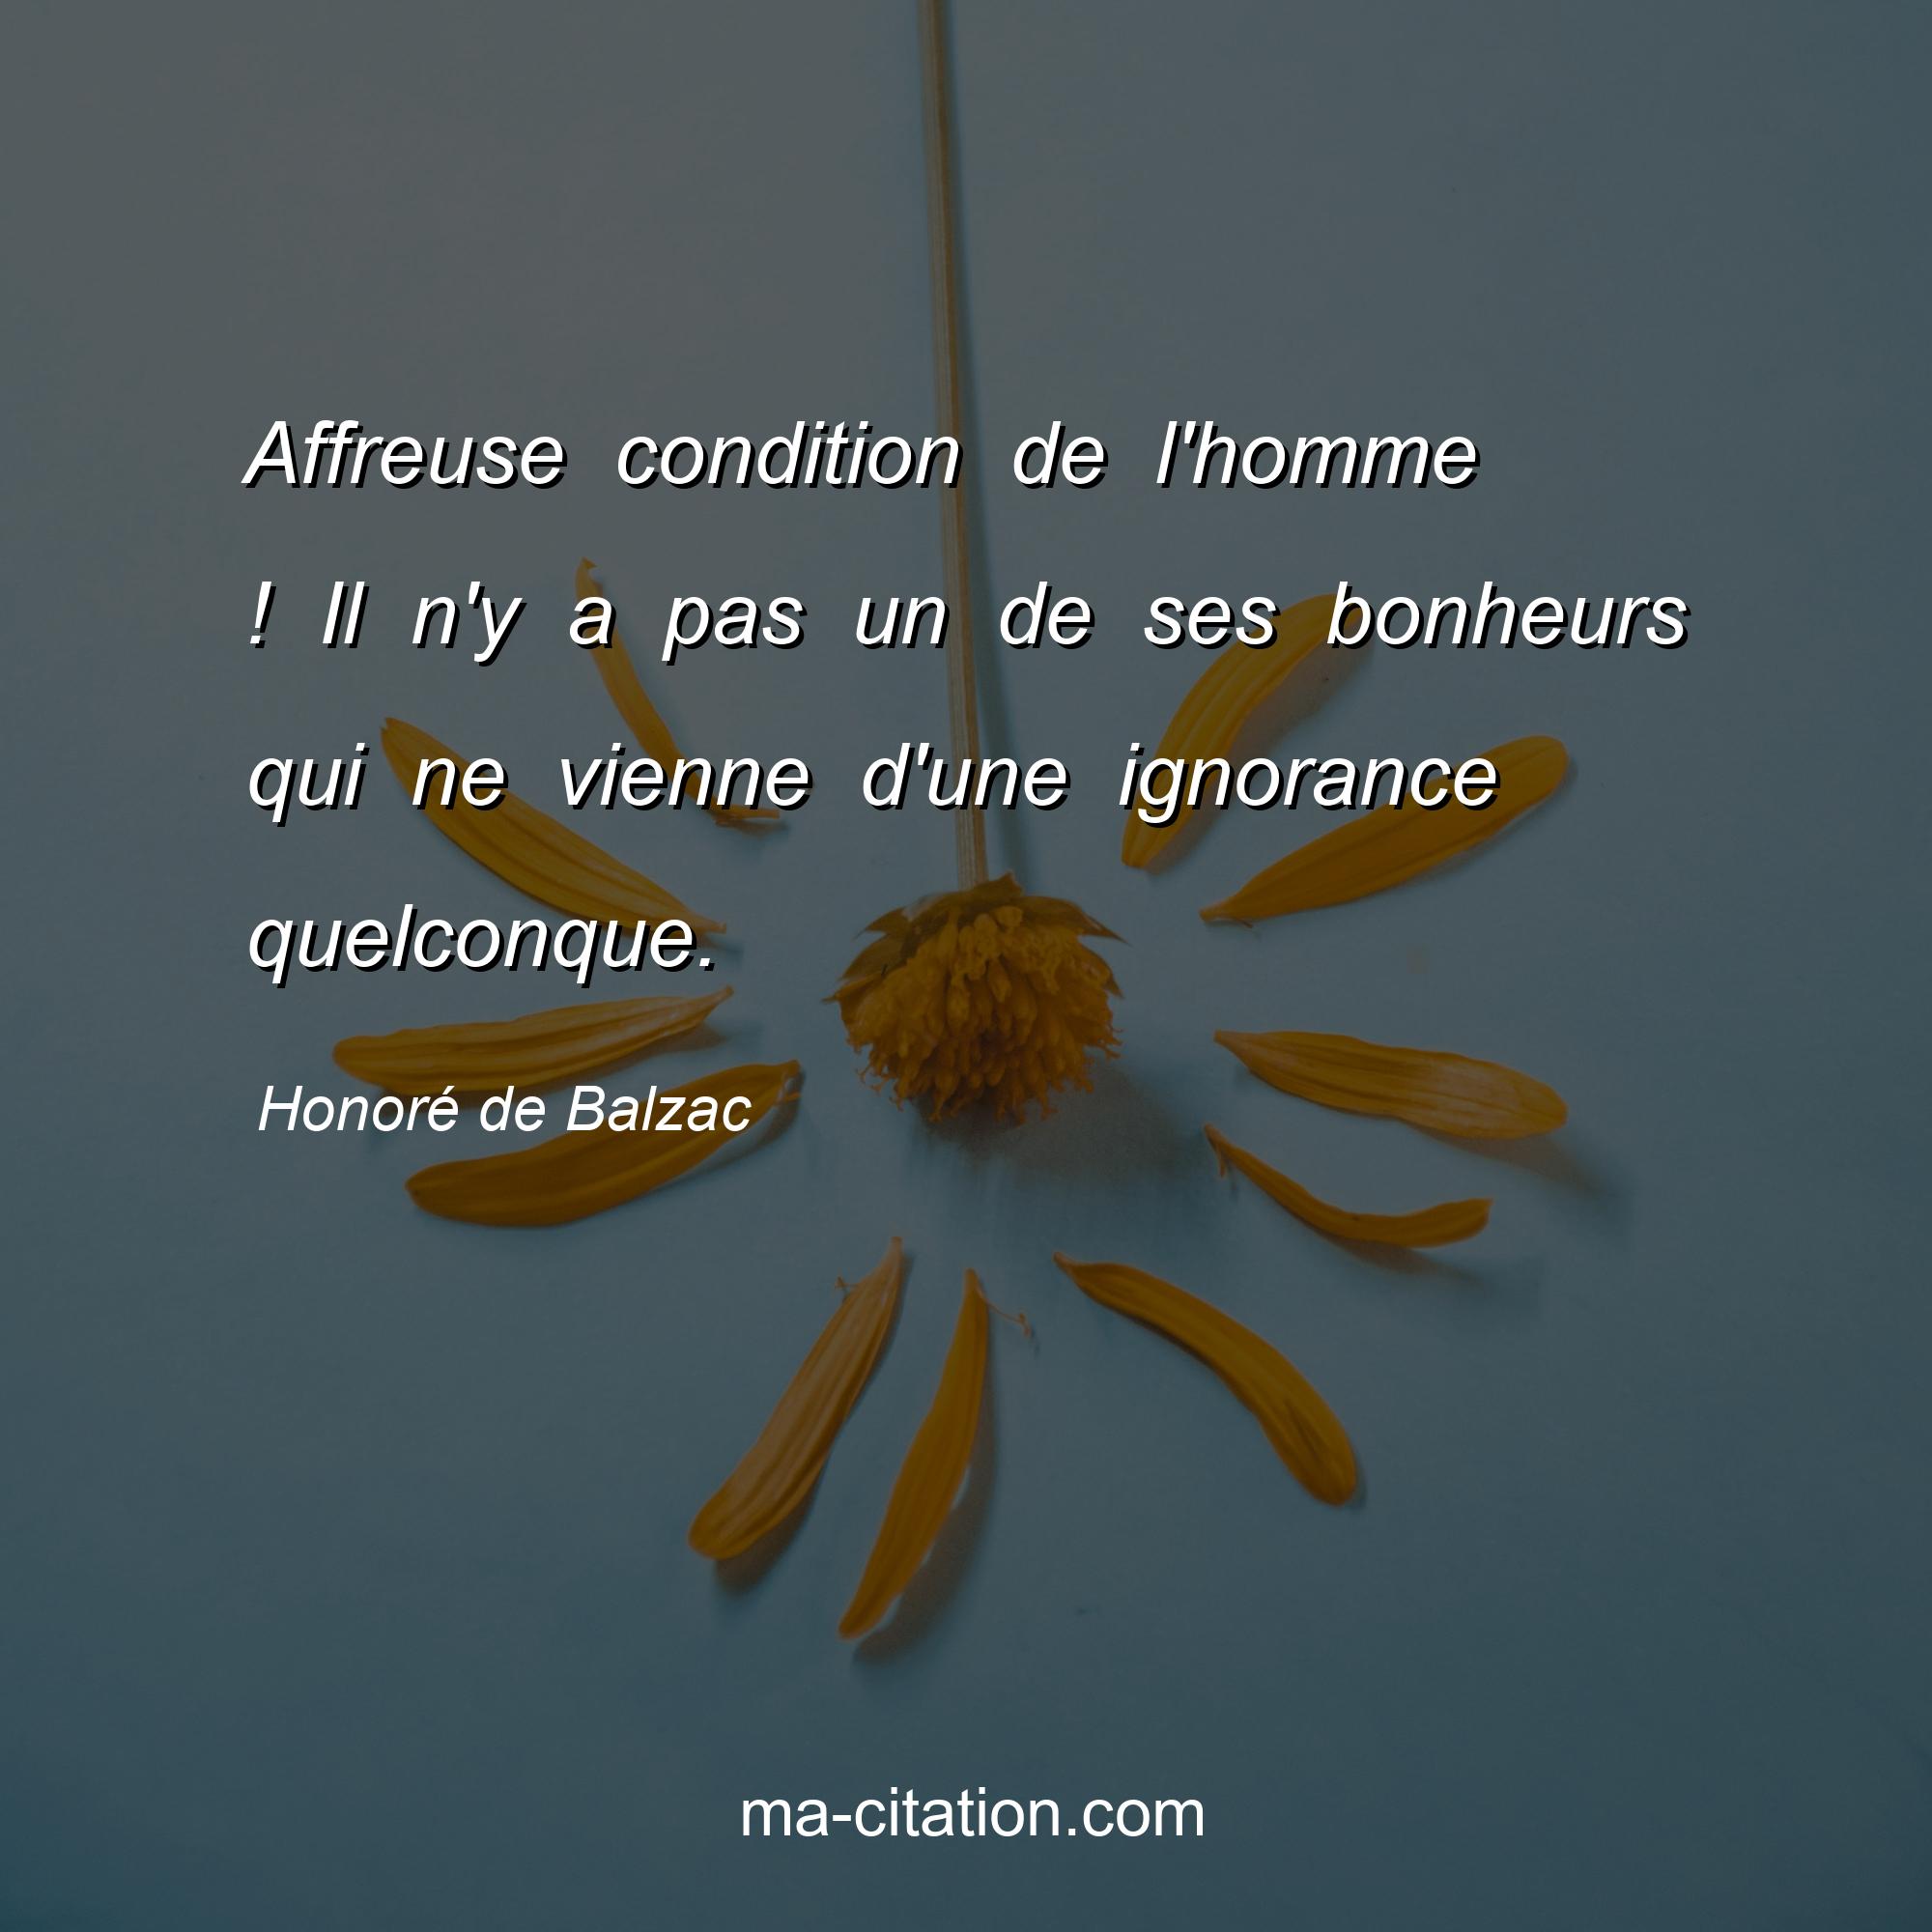 Honoré de Balzac : Affreuse condition de l'homme ! Il n'y a pas un de ses bonheurs qui ne vienne d'une ignorance quelconque.